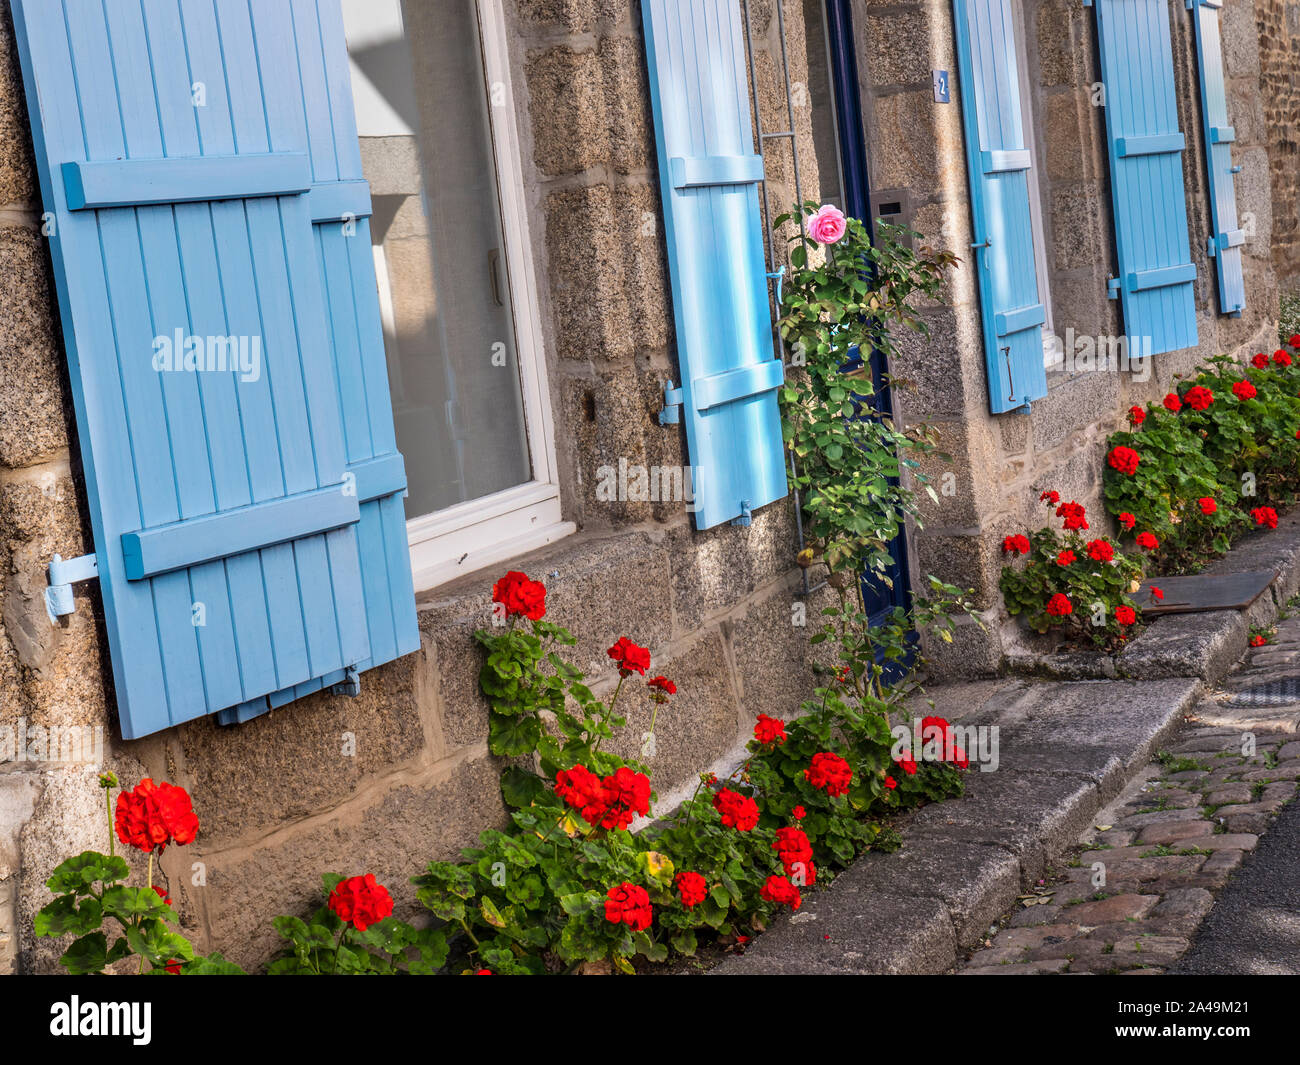 Pont Aven Bretagne Bretagne français traditionnel calme rue latérale avec fenêtres à volets bleu et des fleurs en bordure de chemin en pierre rustique Bretagne France Banque D'Images